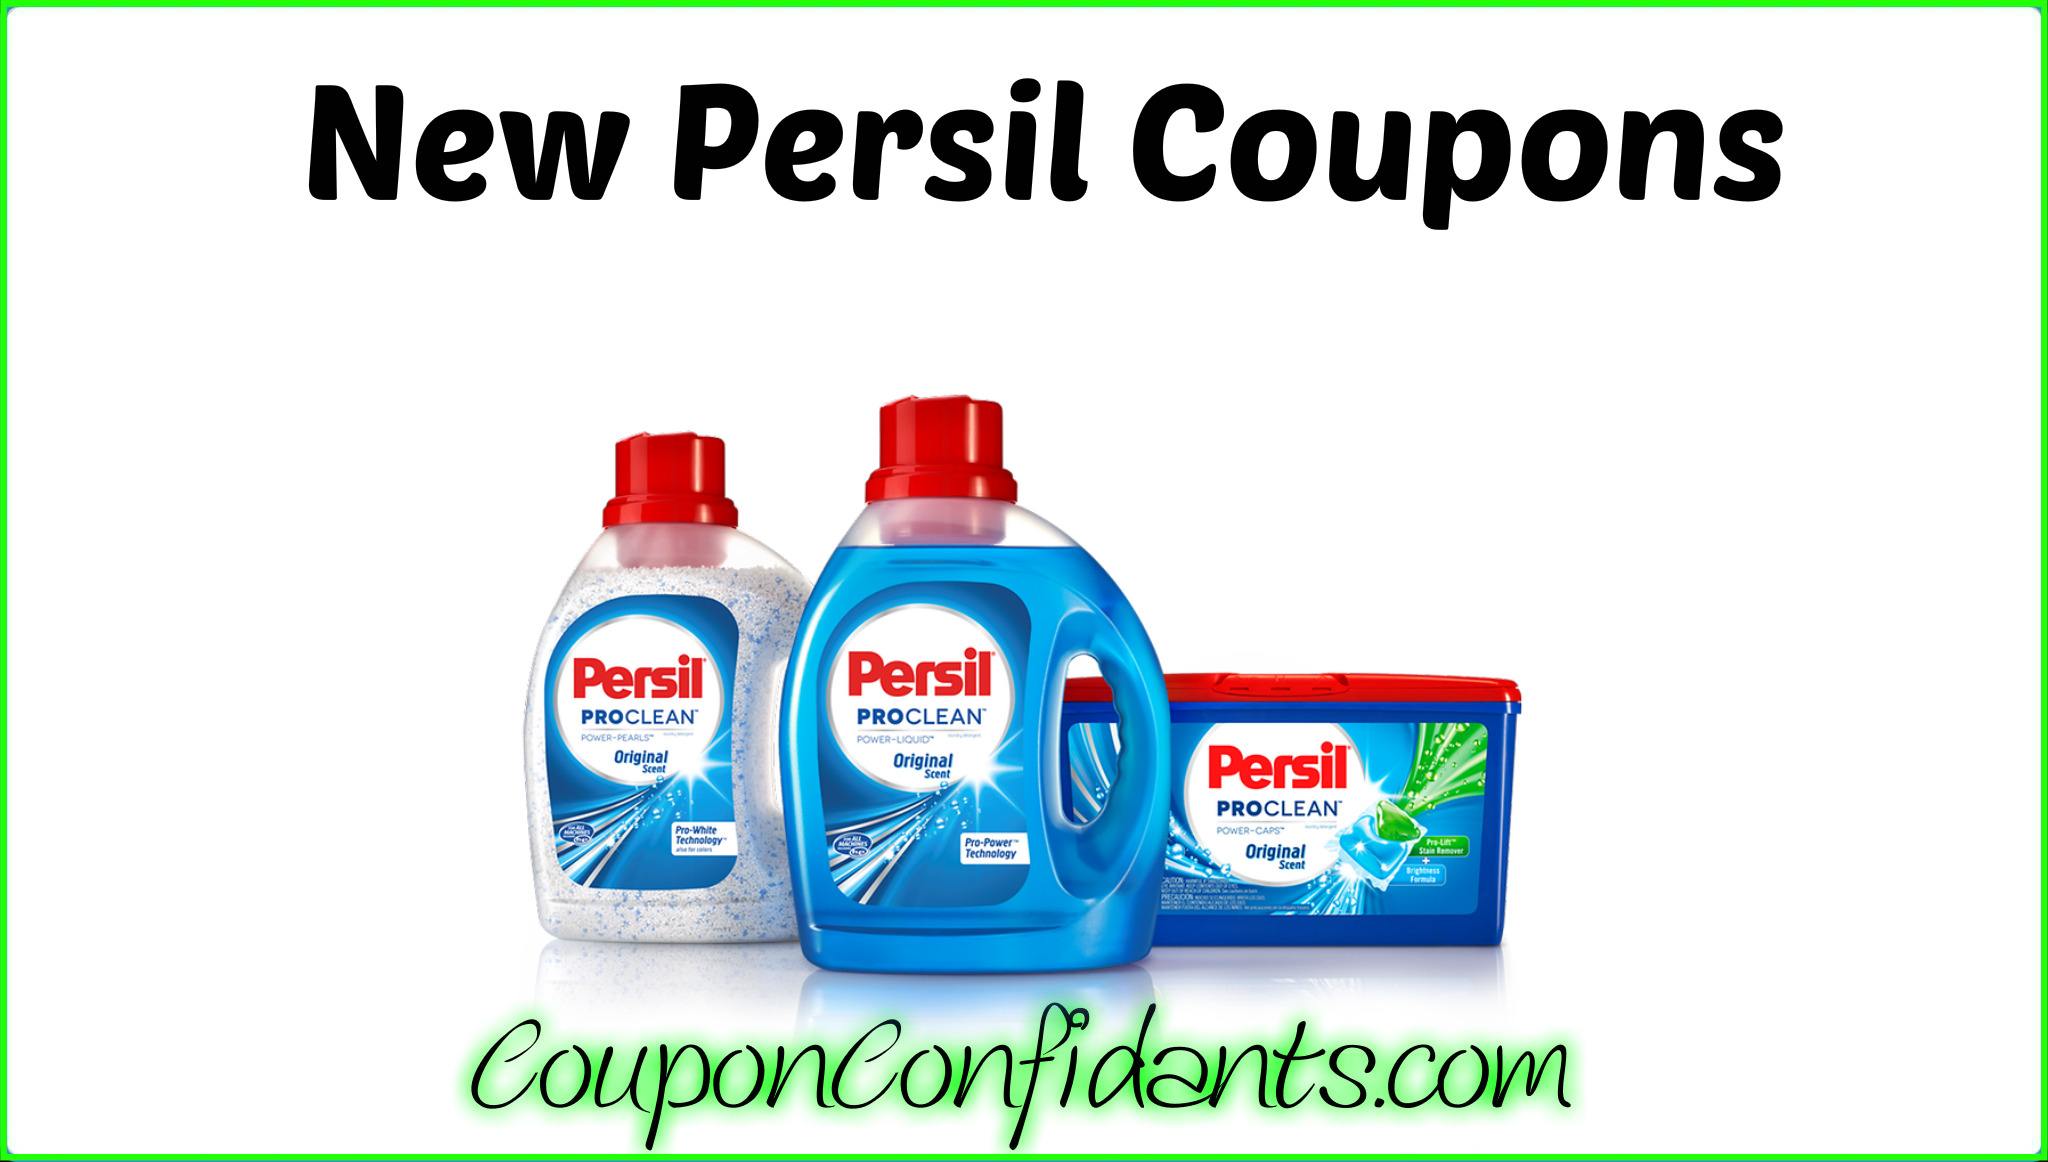 Persil Coupons Printable $3 Printable World Holiday